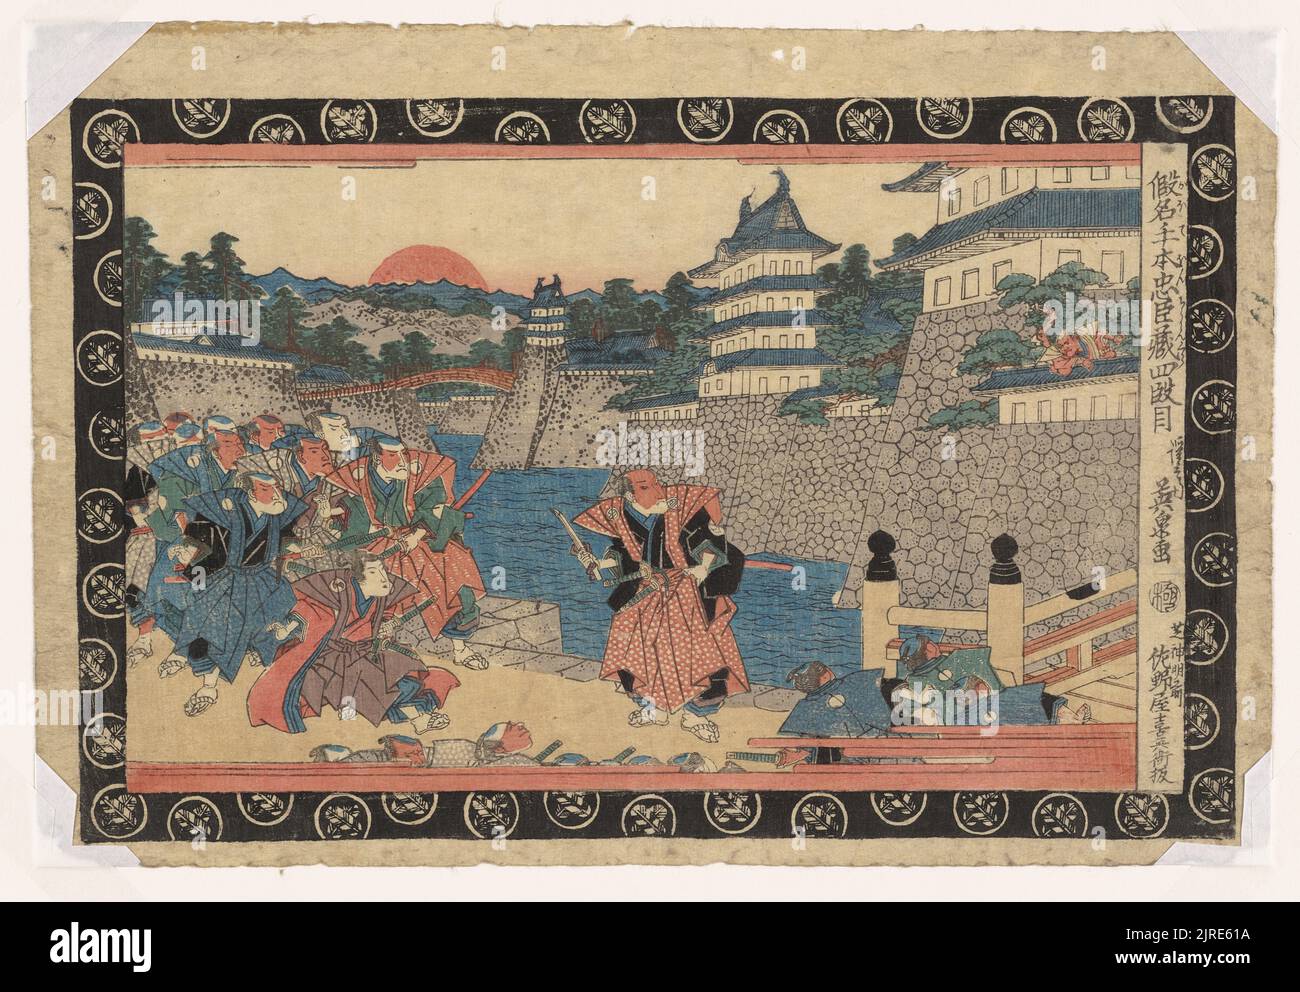 Kanadehon Chushingura (A Treasury of Loyal Retainers): Act 4 Hangan Seppuku (Suicide of Enya Hangan), circa 1820, Tokyo, by Keisai Eisen. Stock Photo